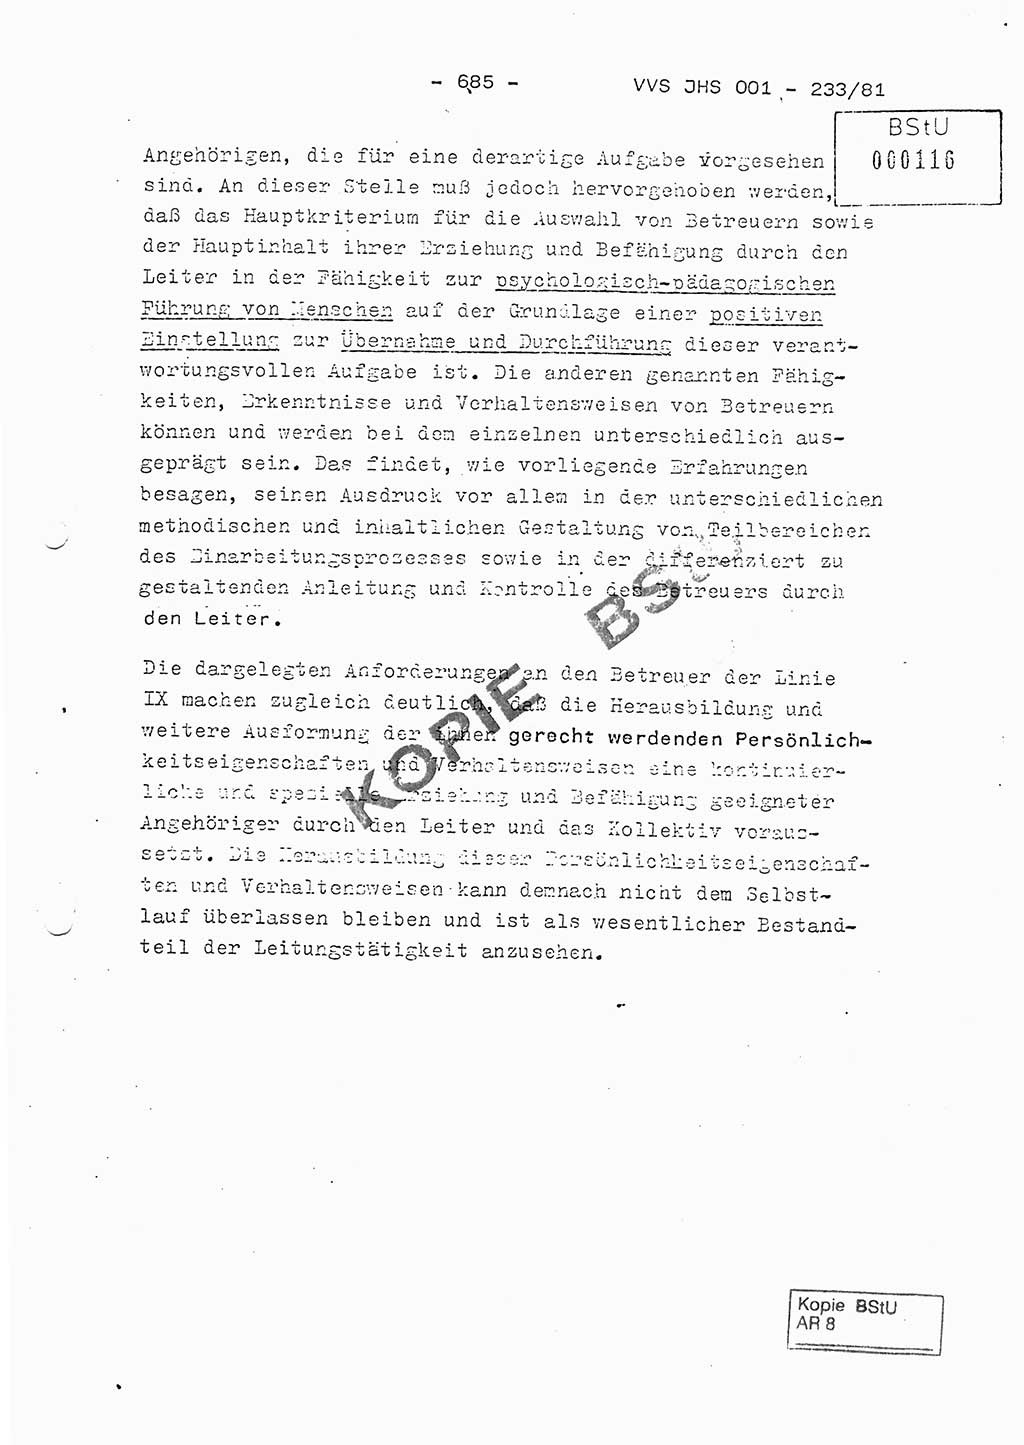 Dissertation Oberstleutnant Horst Zank (JHS), Oberstleutnant Dr. Karl-Heinz Knoblauch (JHS), Oberstleutnant Gustav-Adolf Kowalewski (HA Ⅸ), Oberstleutnant Wolfgang Plötner (HA Ⅸ), Ministerium für Staatssicherheit (MfS) [Deutsche Demokratische Republik (DDR)], Juristische Hochschule (JHS), Vertrauliche Verschlußsache (VVS) o001-233/81, Potsdam 1981, Blatt 685 (Diss. MfS DDR JHS VVS o001-233/81 1981, Bl. 685)